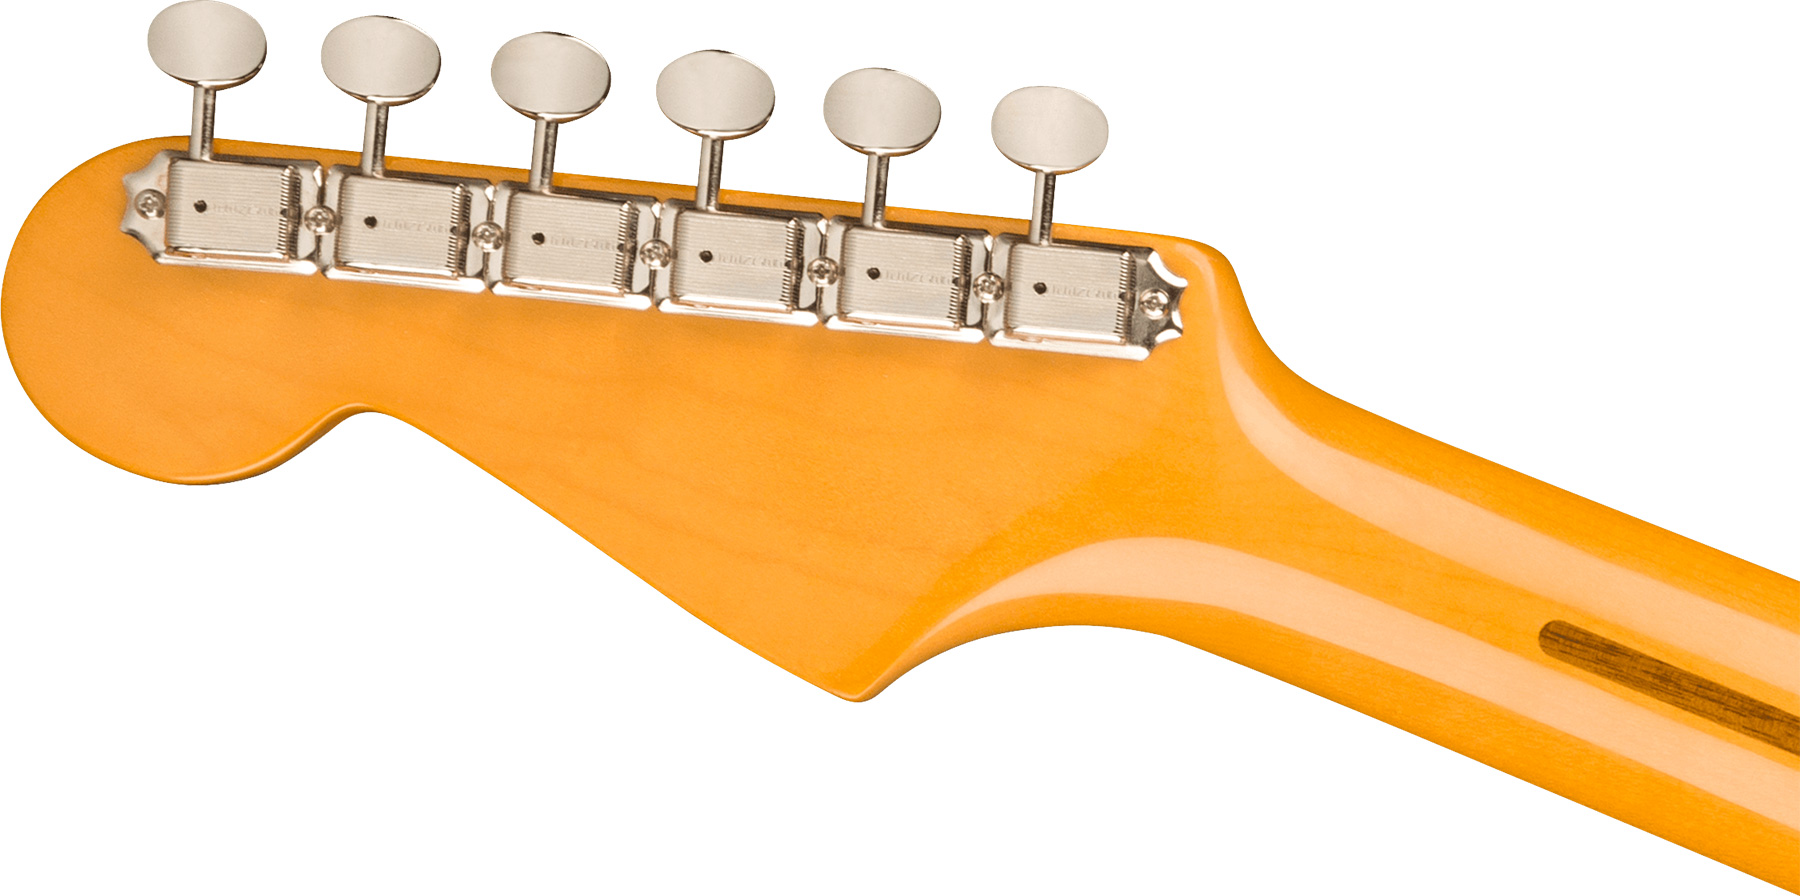 Fender Strat 1957 American Vintage Ii Usa 3s Trem Mn - Vintage Blonde - E-Gitarre in Str-Form - Variation 3